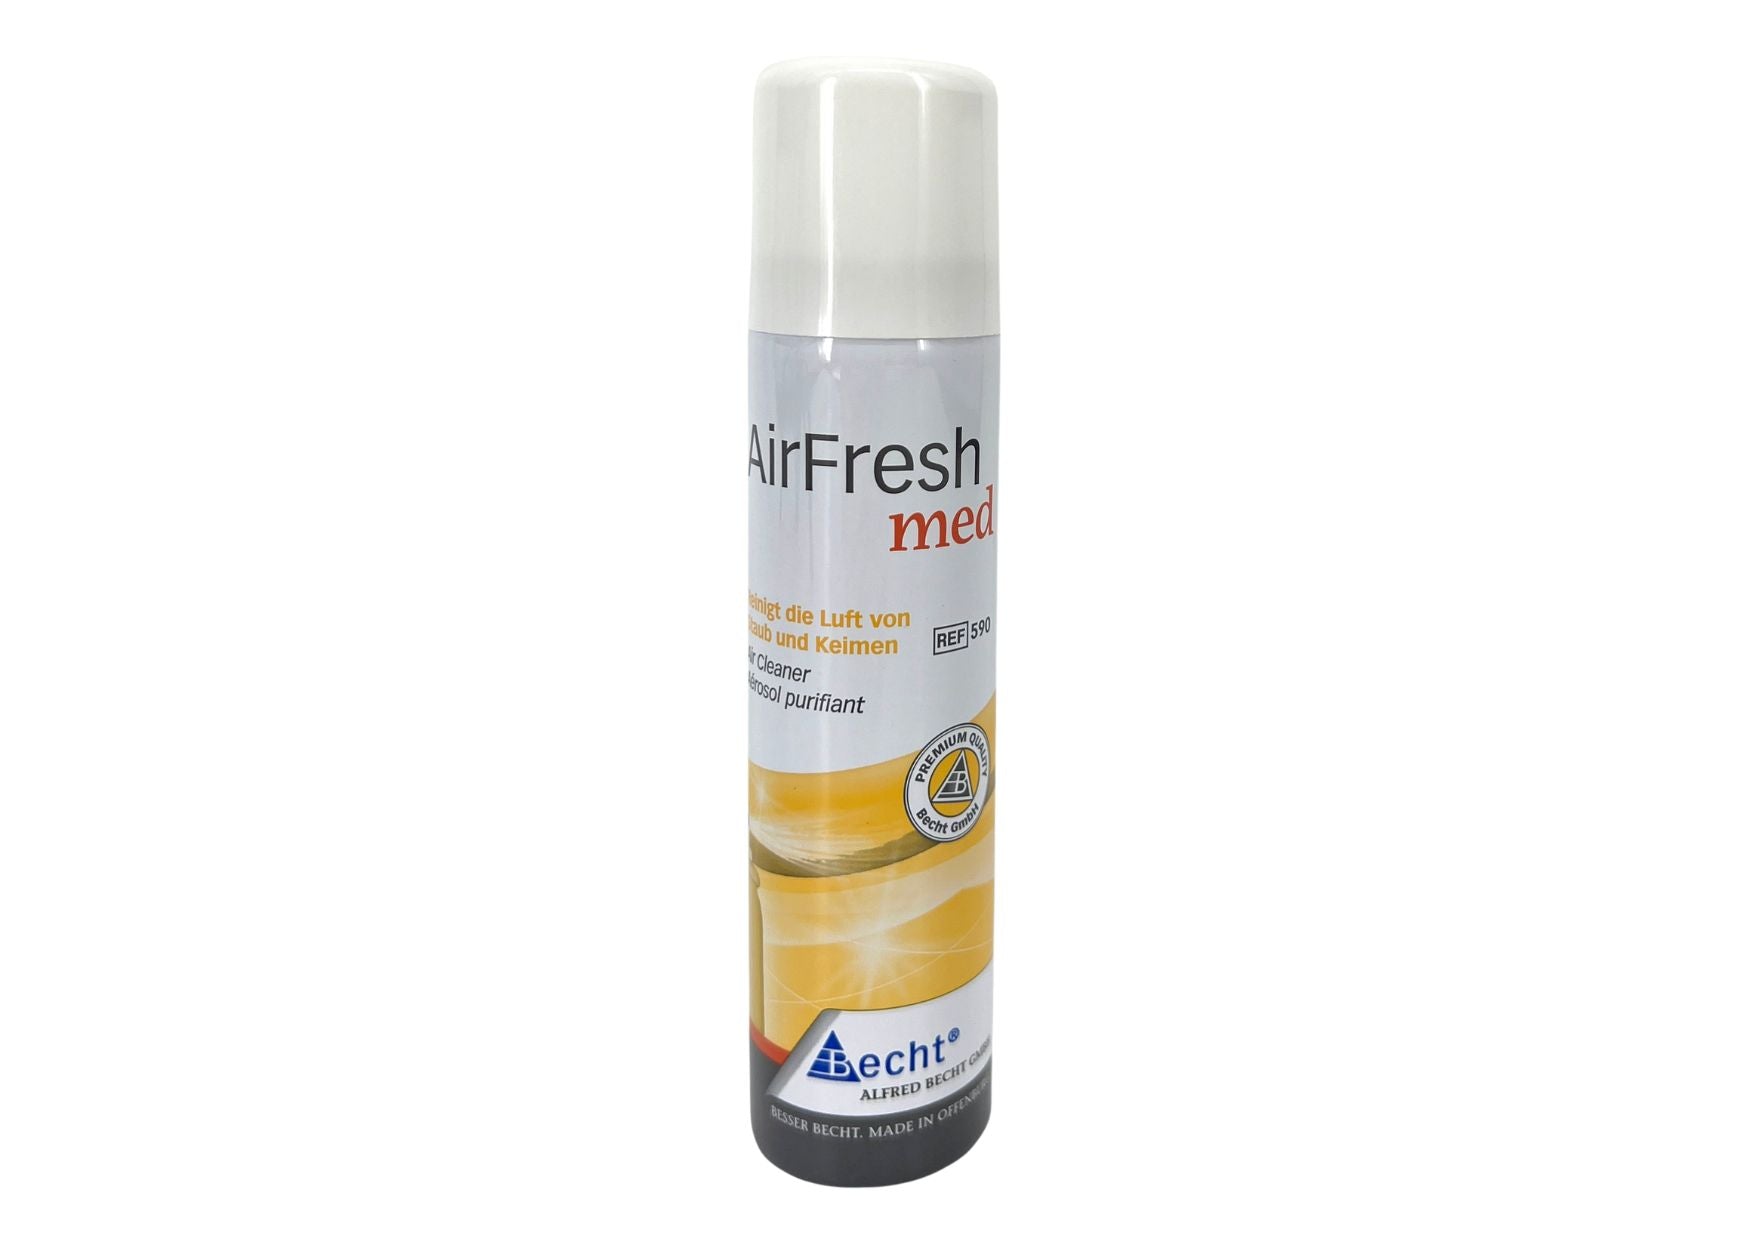 AirFresh med odor eliminator spray lemon